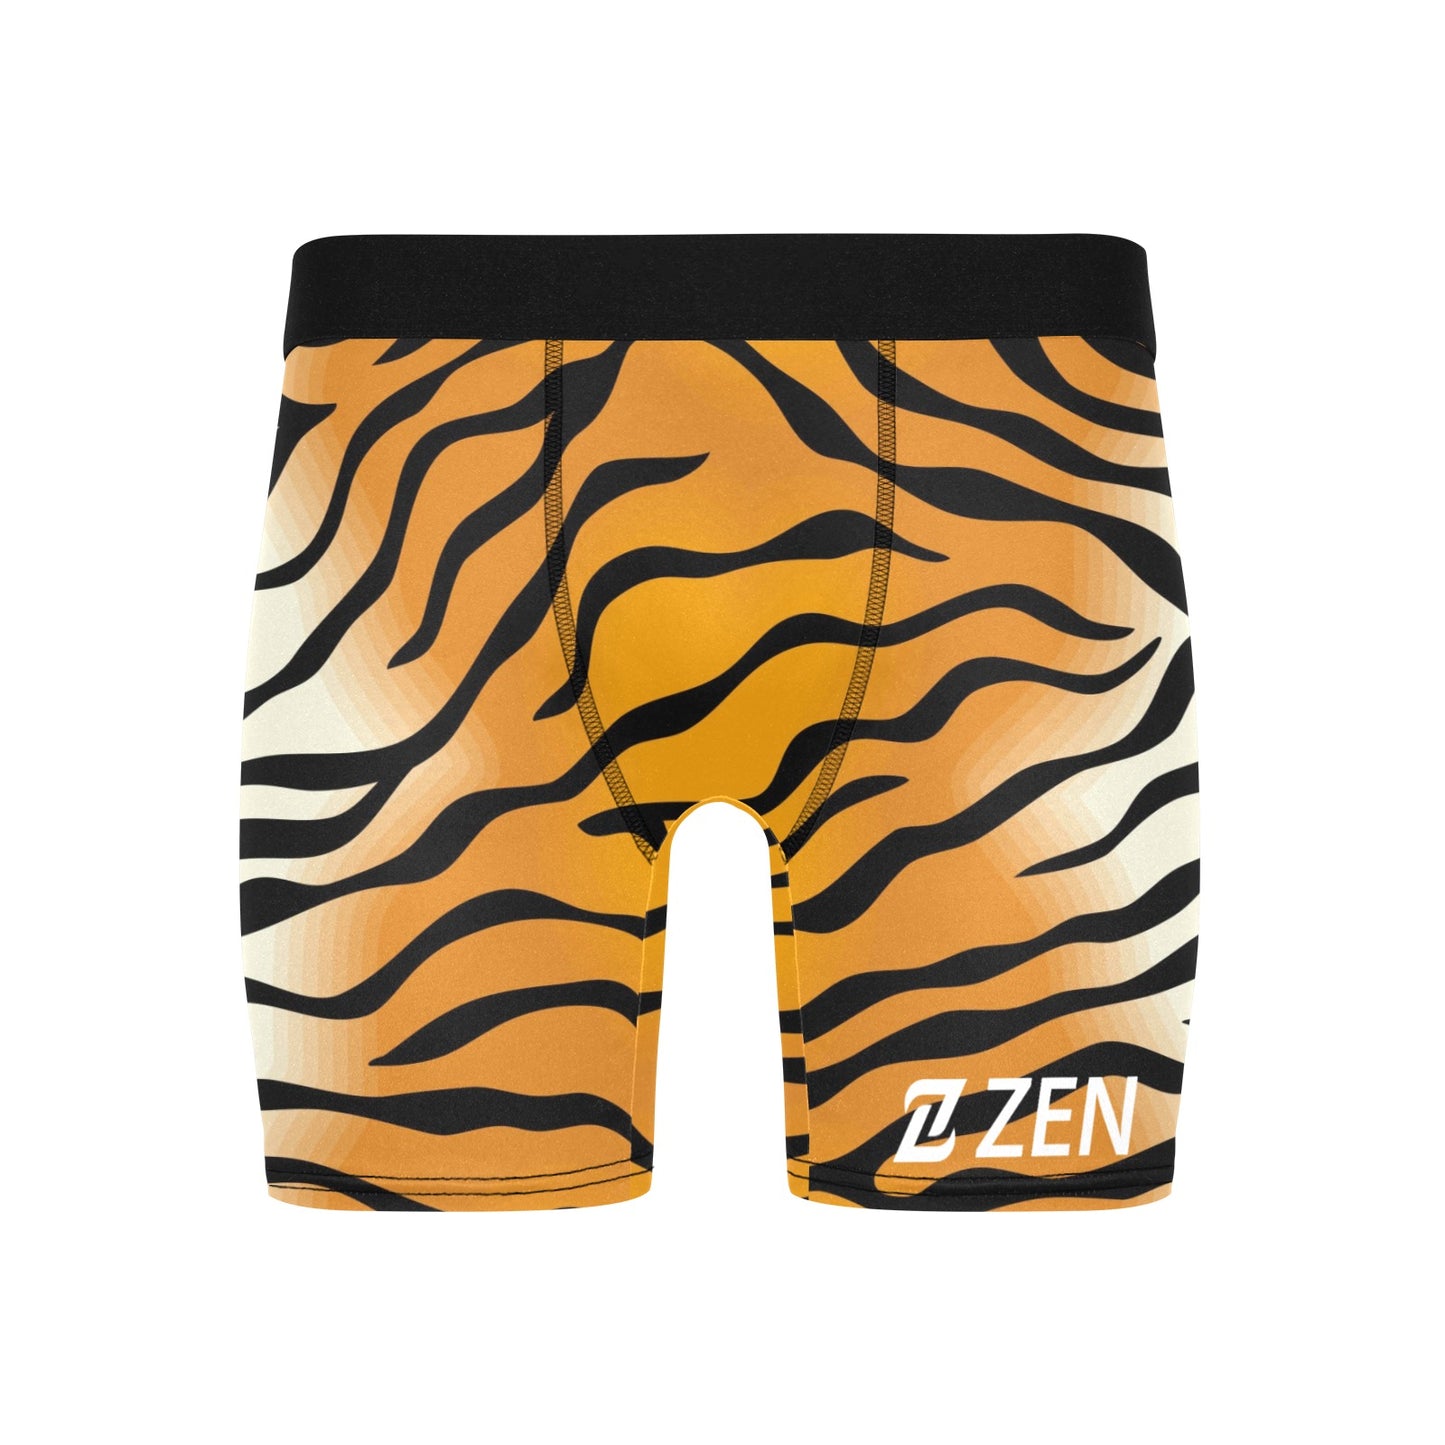 Zen Boxers Long - Tiger Stripes